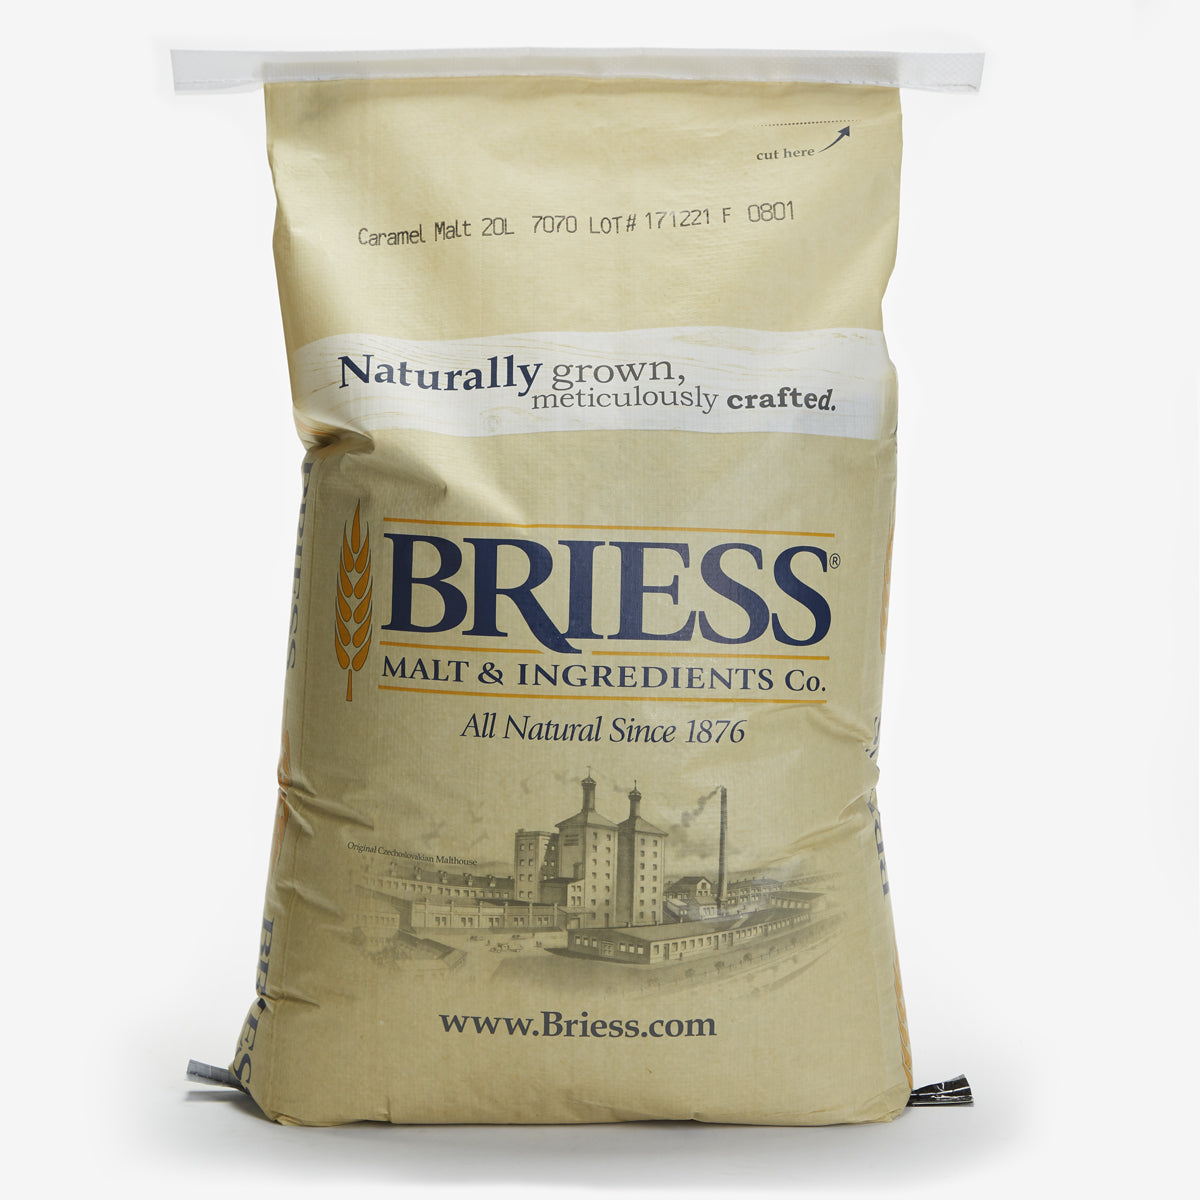 Briess Caramel Malt 20 L